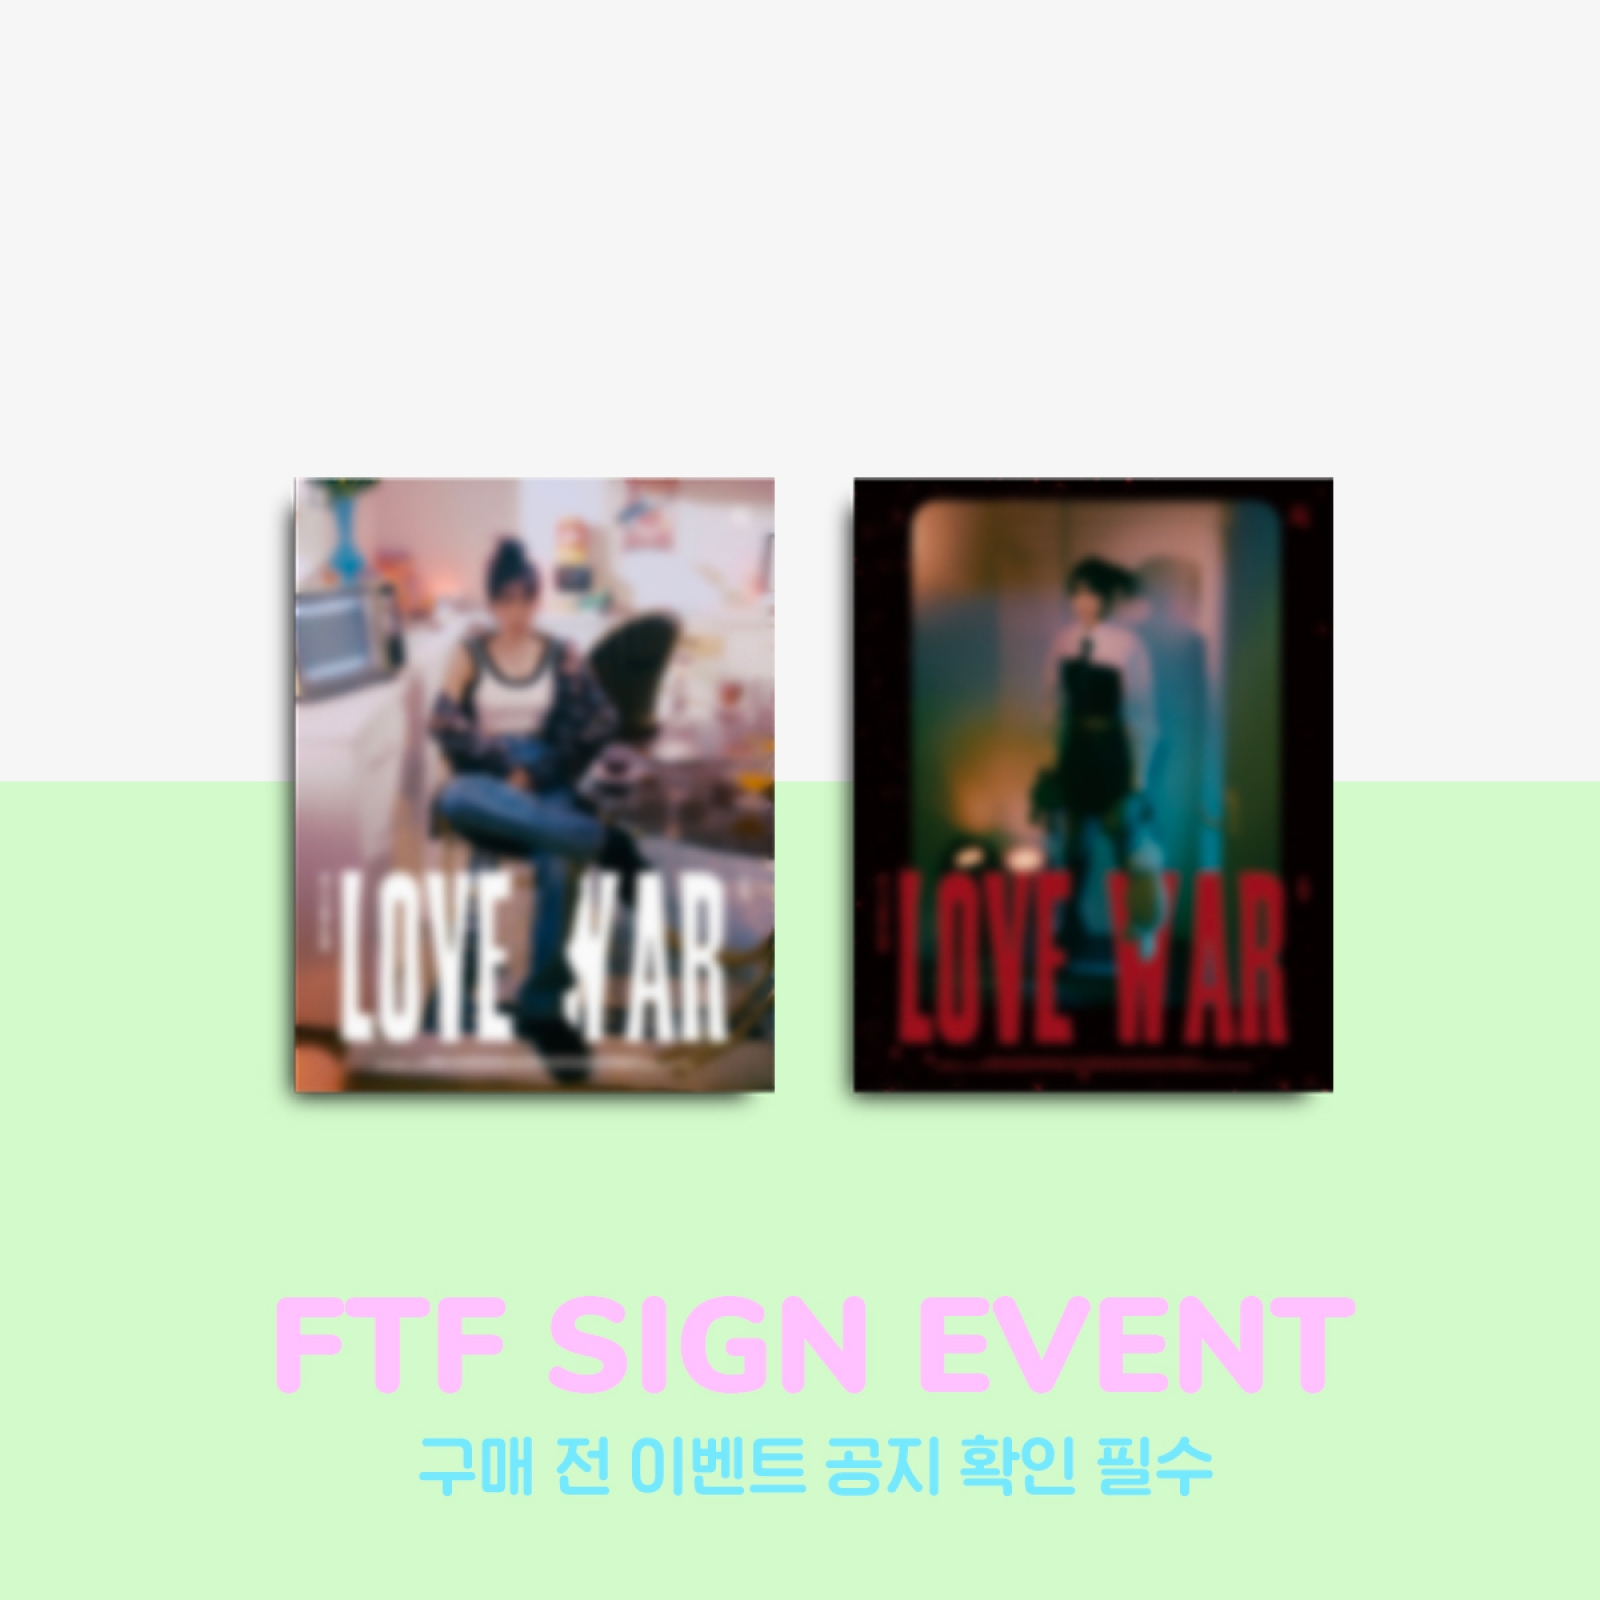 [2/19 대면 팬사인회] 최예나 - Love War / 1집 싱글앨범